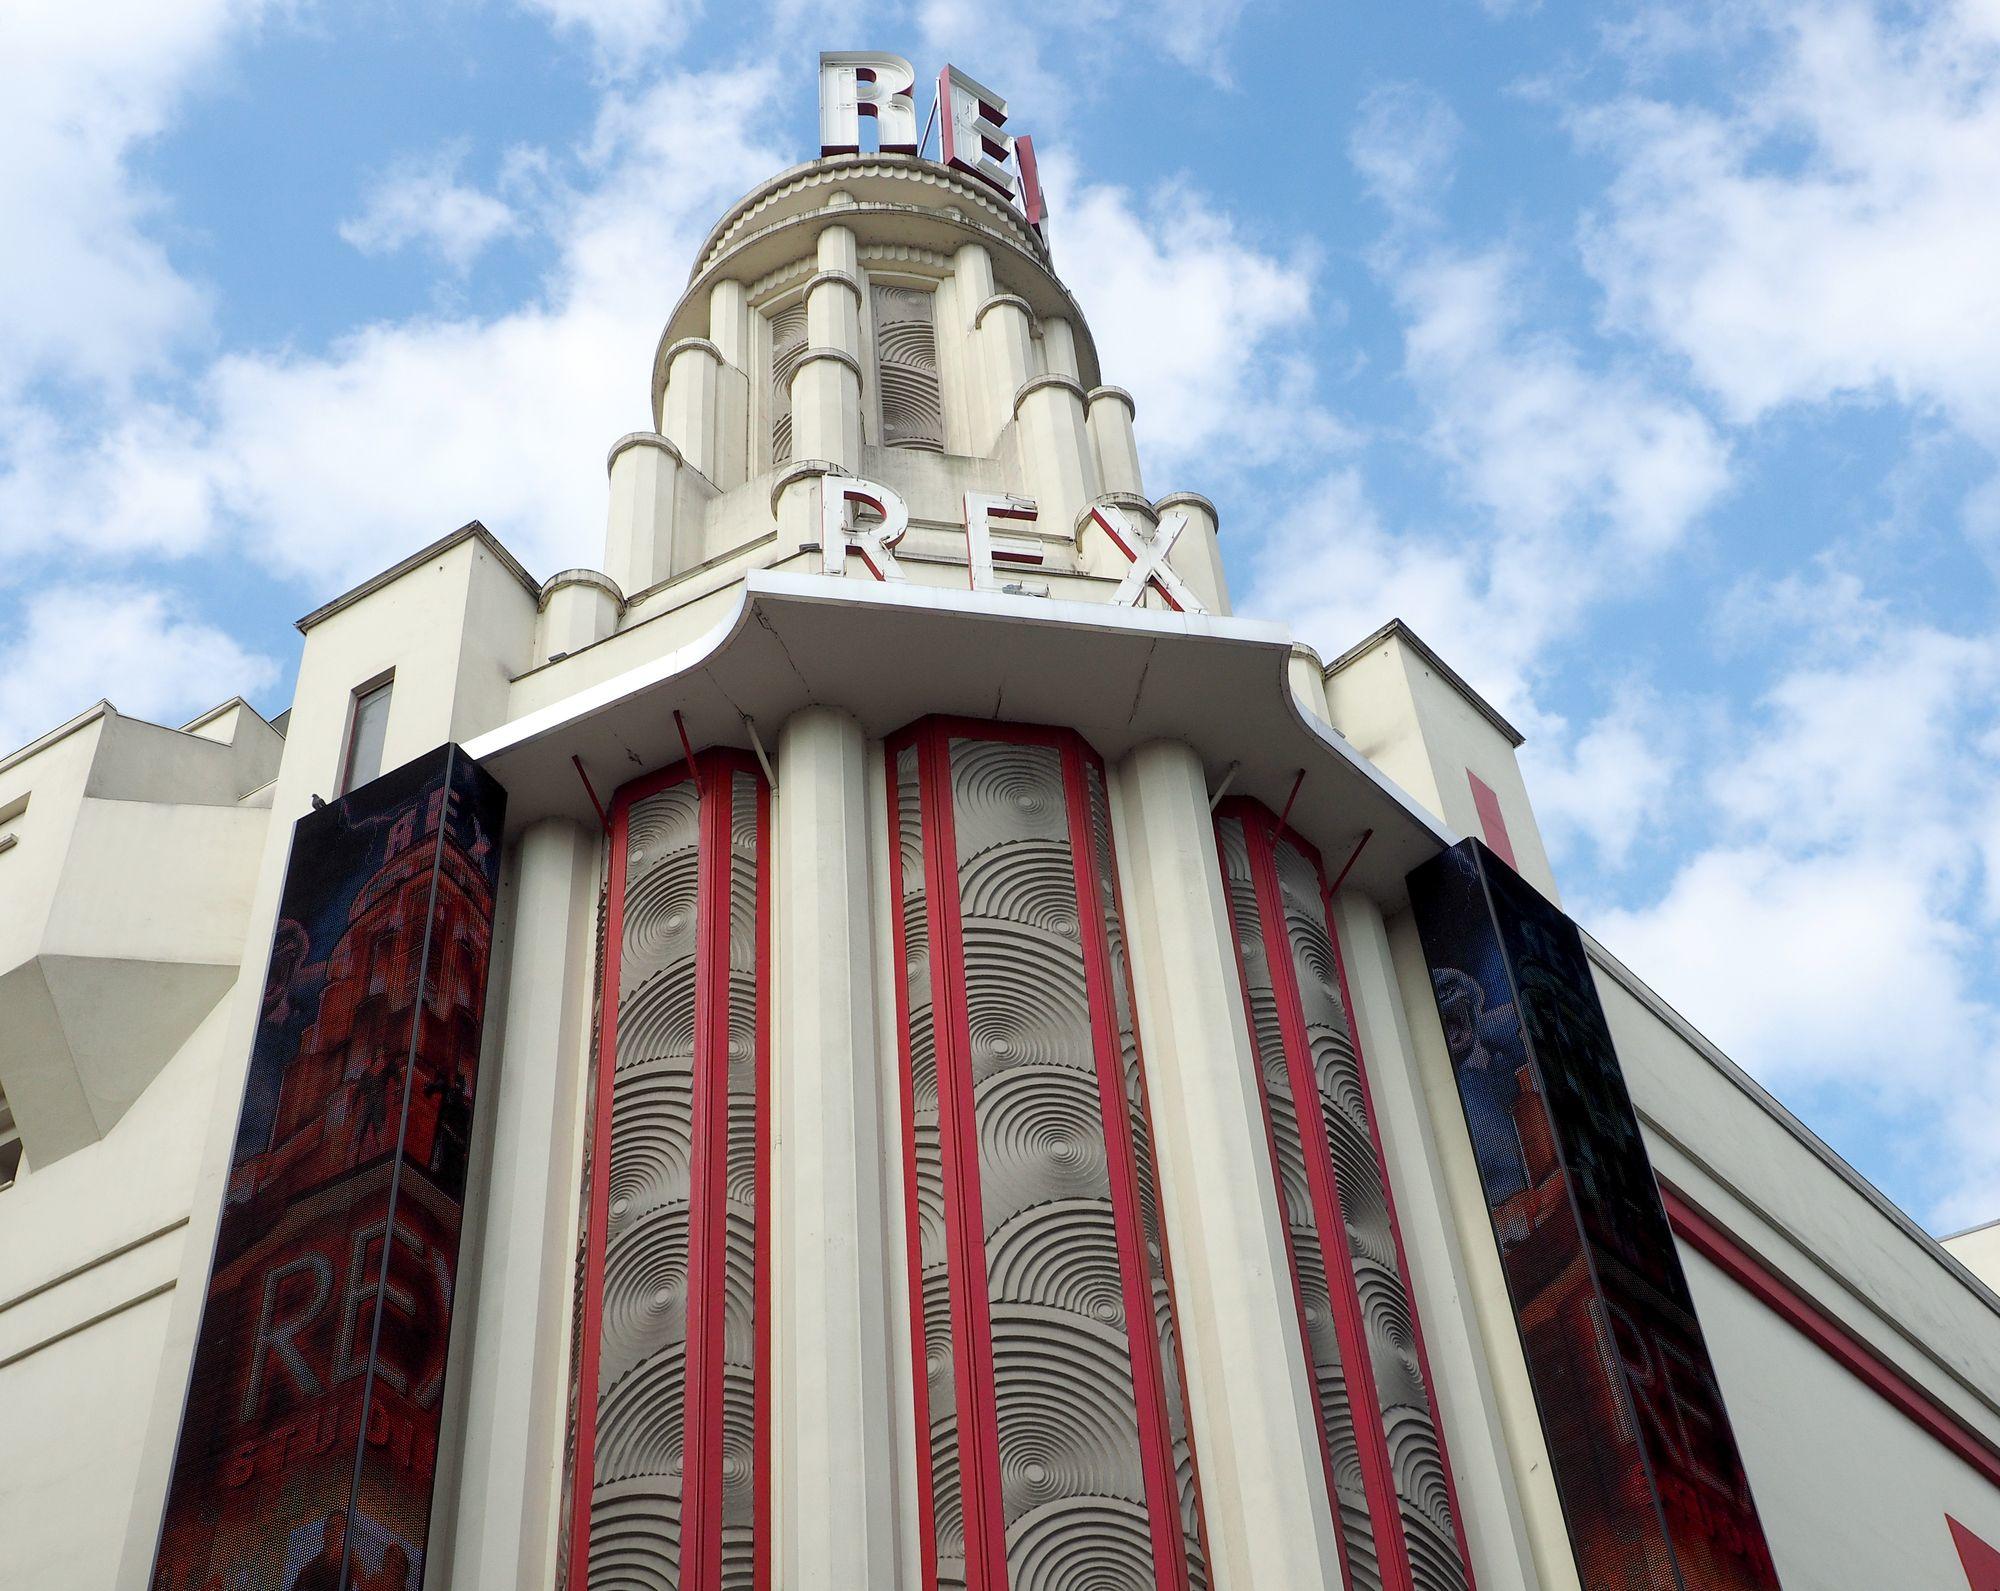 Sur les grands Boulevards, près de l'hôtel Grammont, le cinema du Grand Rex domine par son architecture imposante.